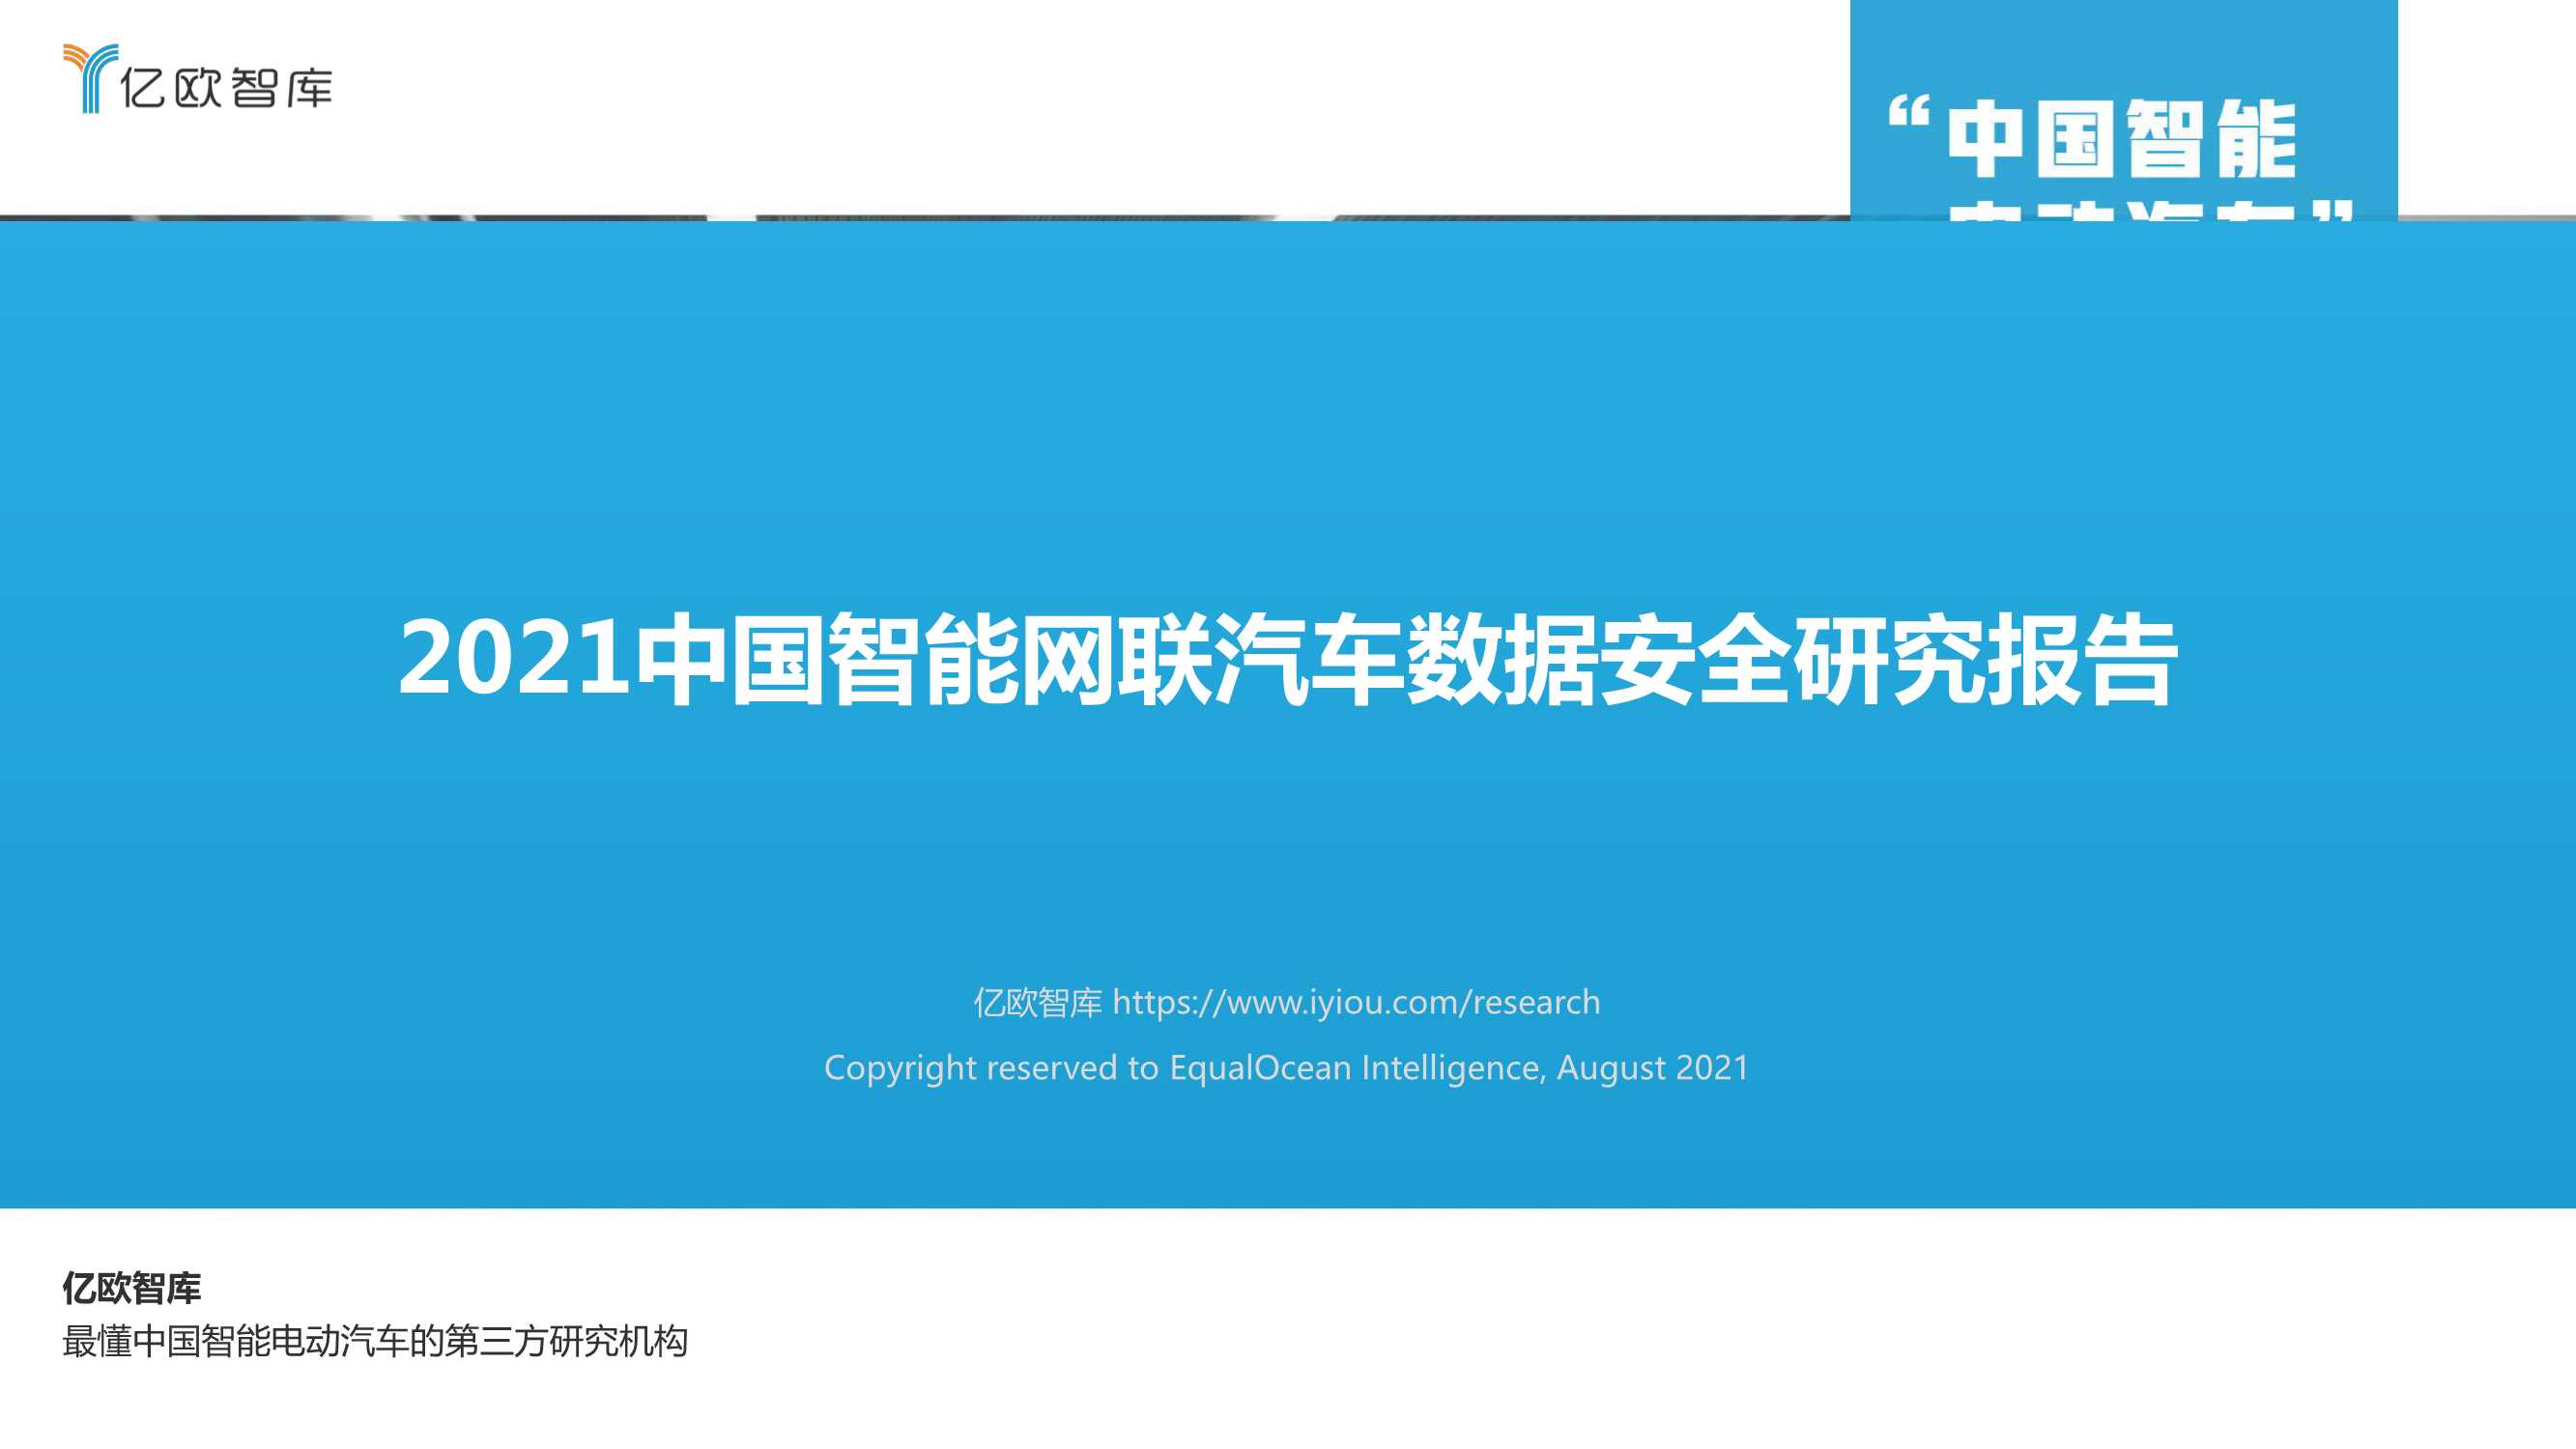 亿欧-2021中国智能网联汽车数据安全研究报告-2021.09-31页